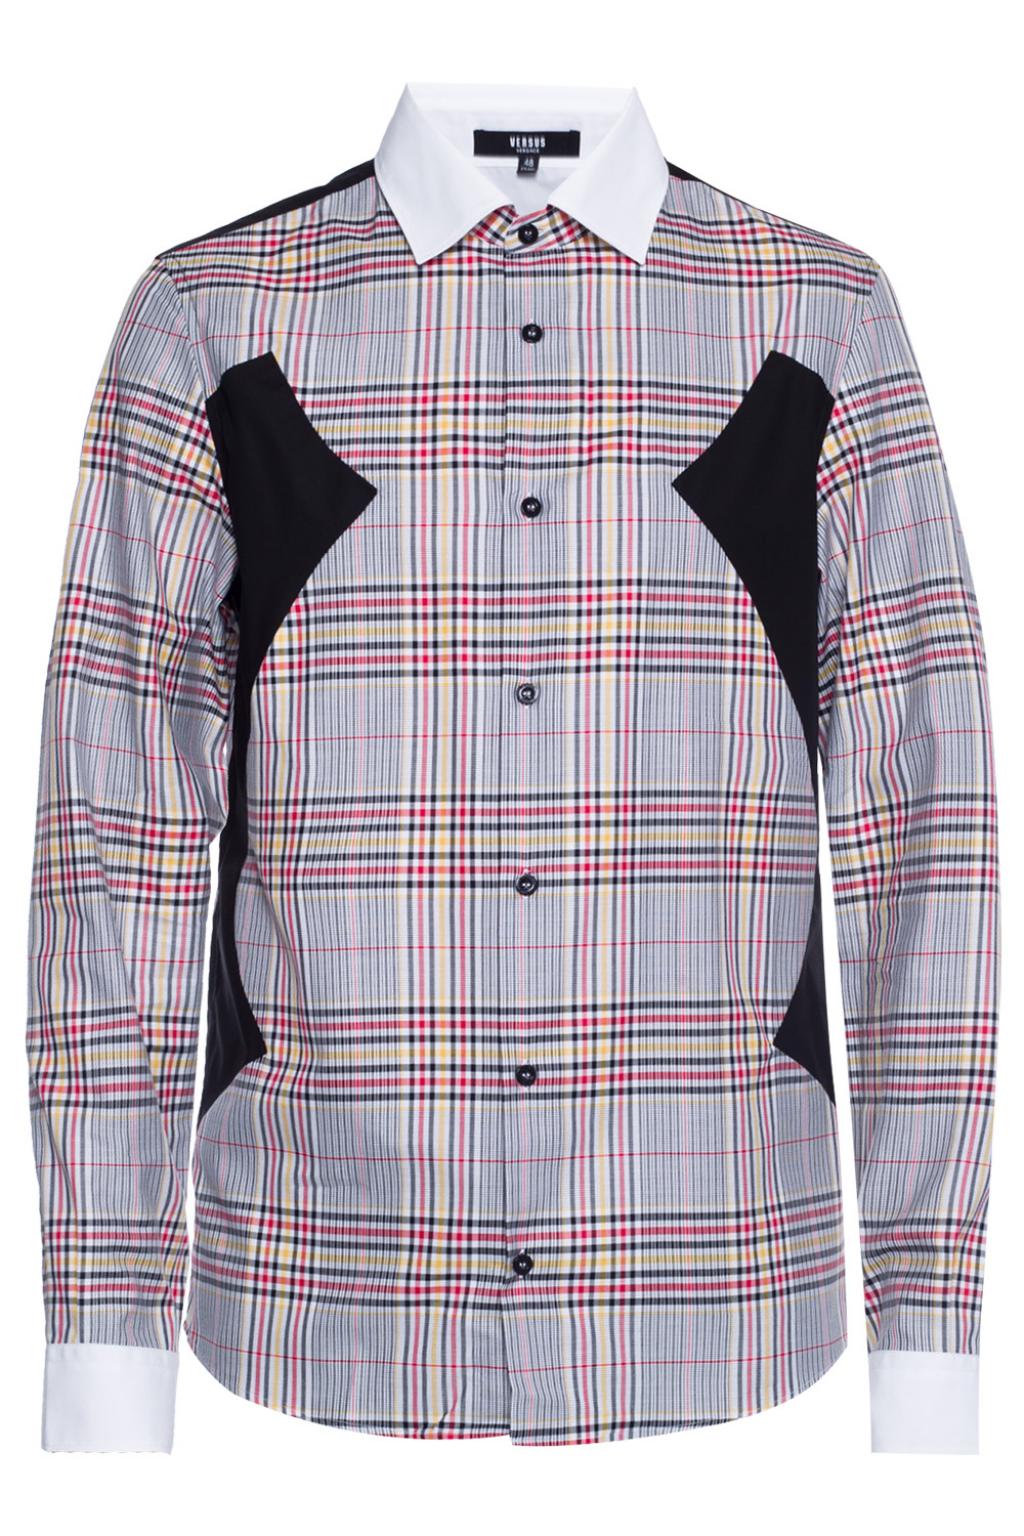 versace checkered shirt